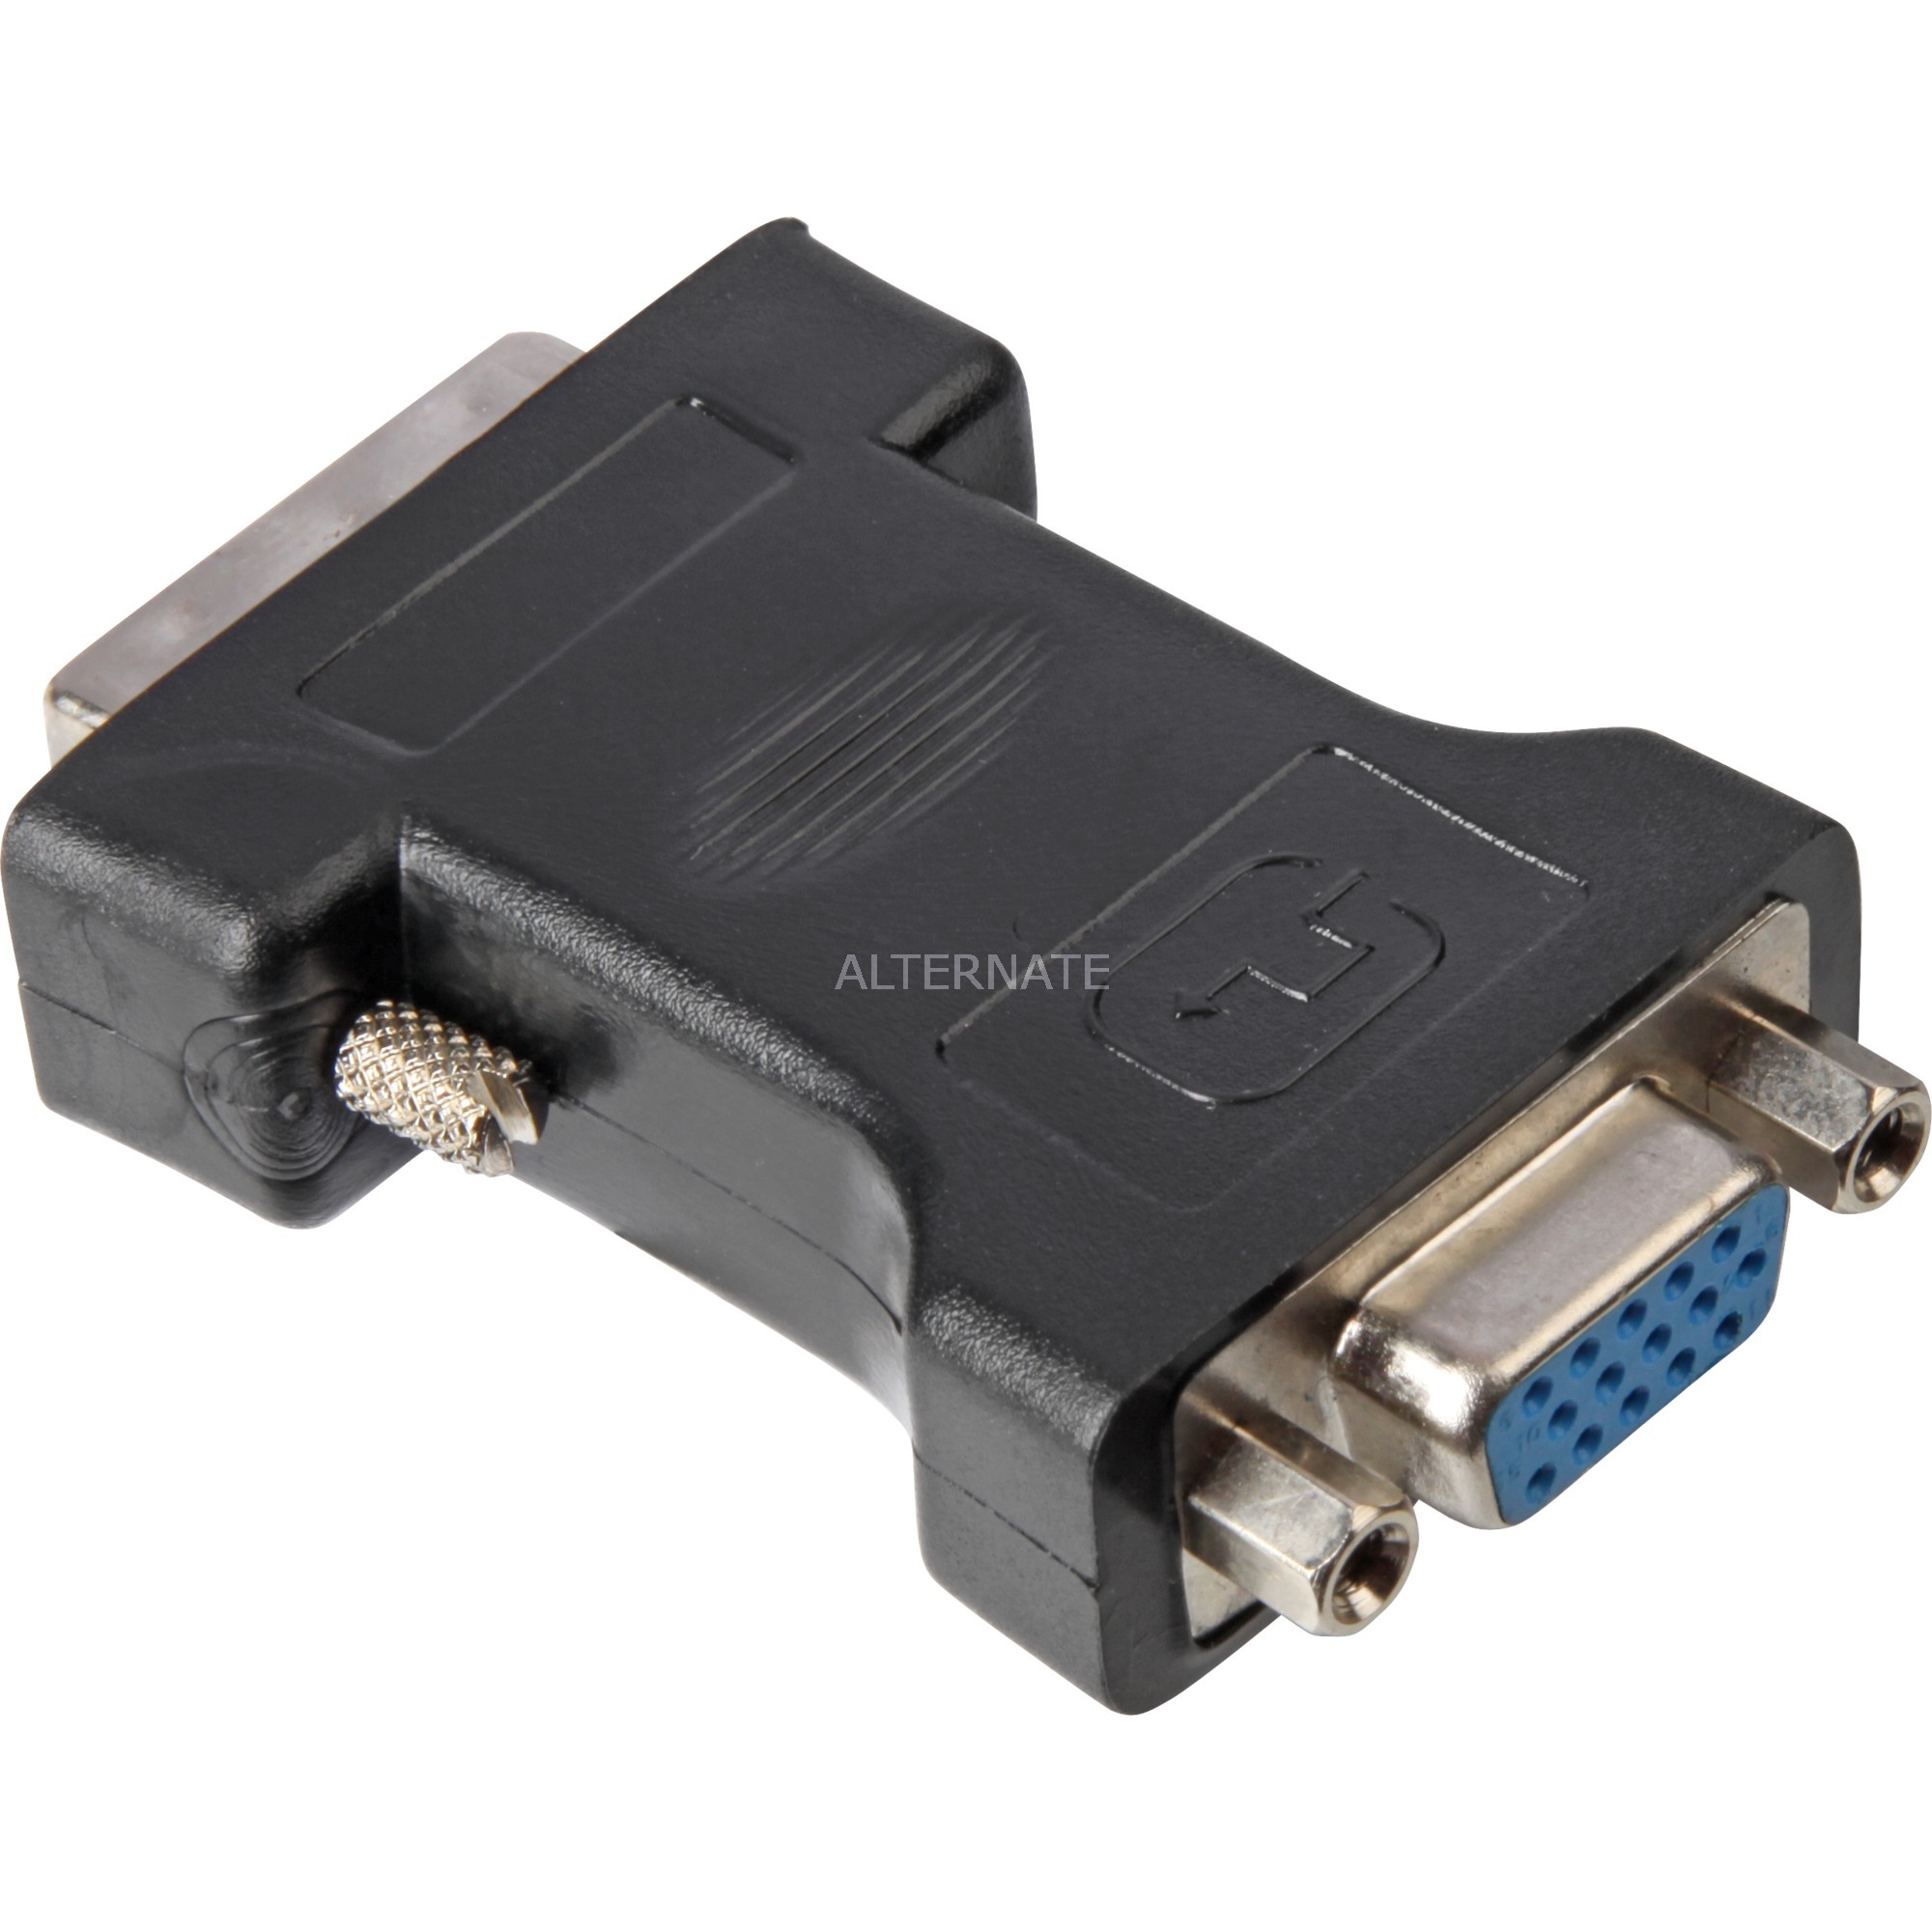 Image of Alternate - Adapter DVI-I Stecker > VGA 24+5 Buchse online einkaufen bei Alternate